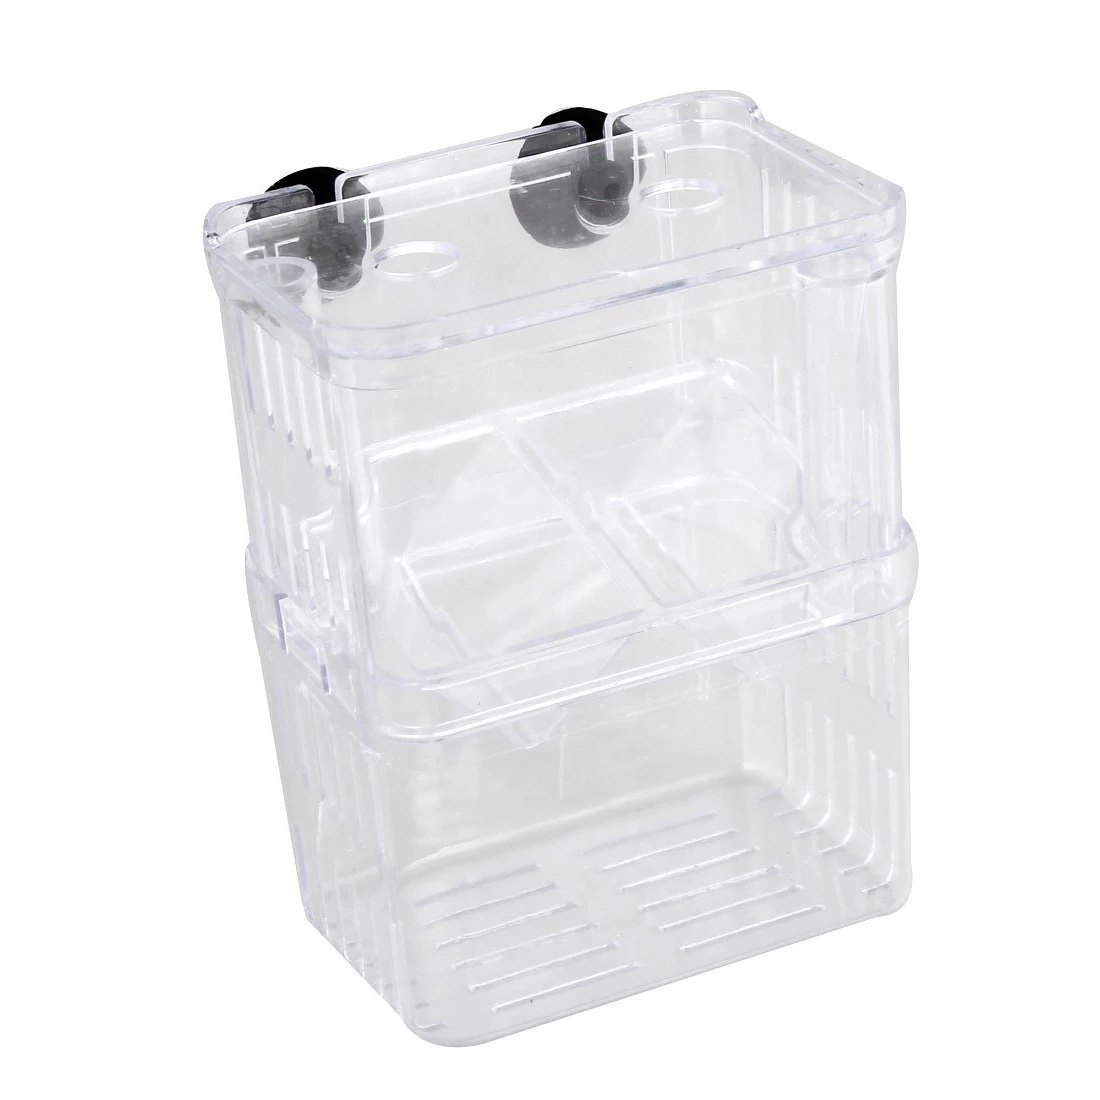 FFYY-прозрачный пластик для разведения рыб в аквариуме коробка изоляция инкубатора